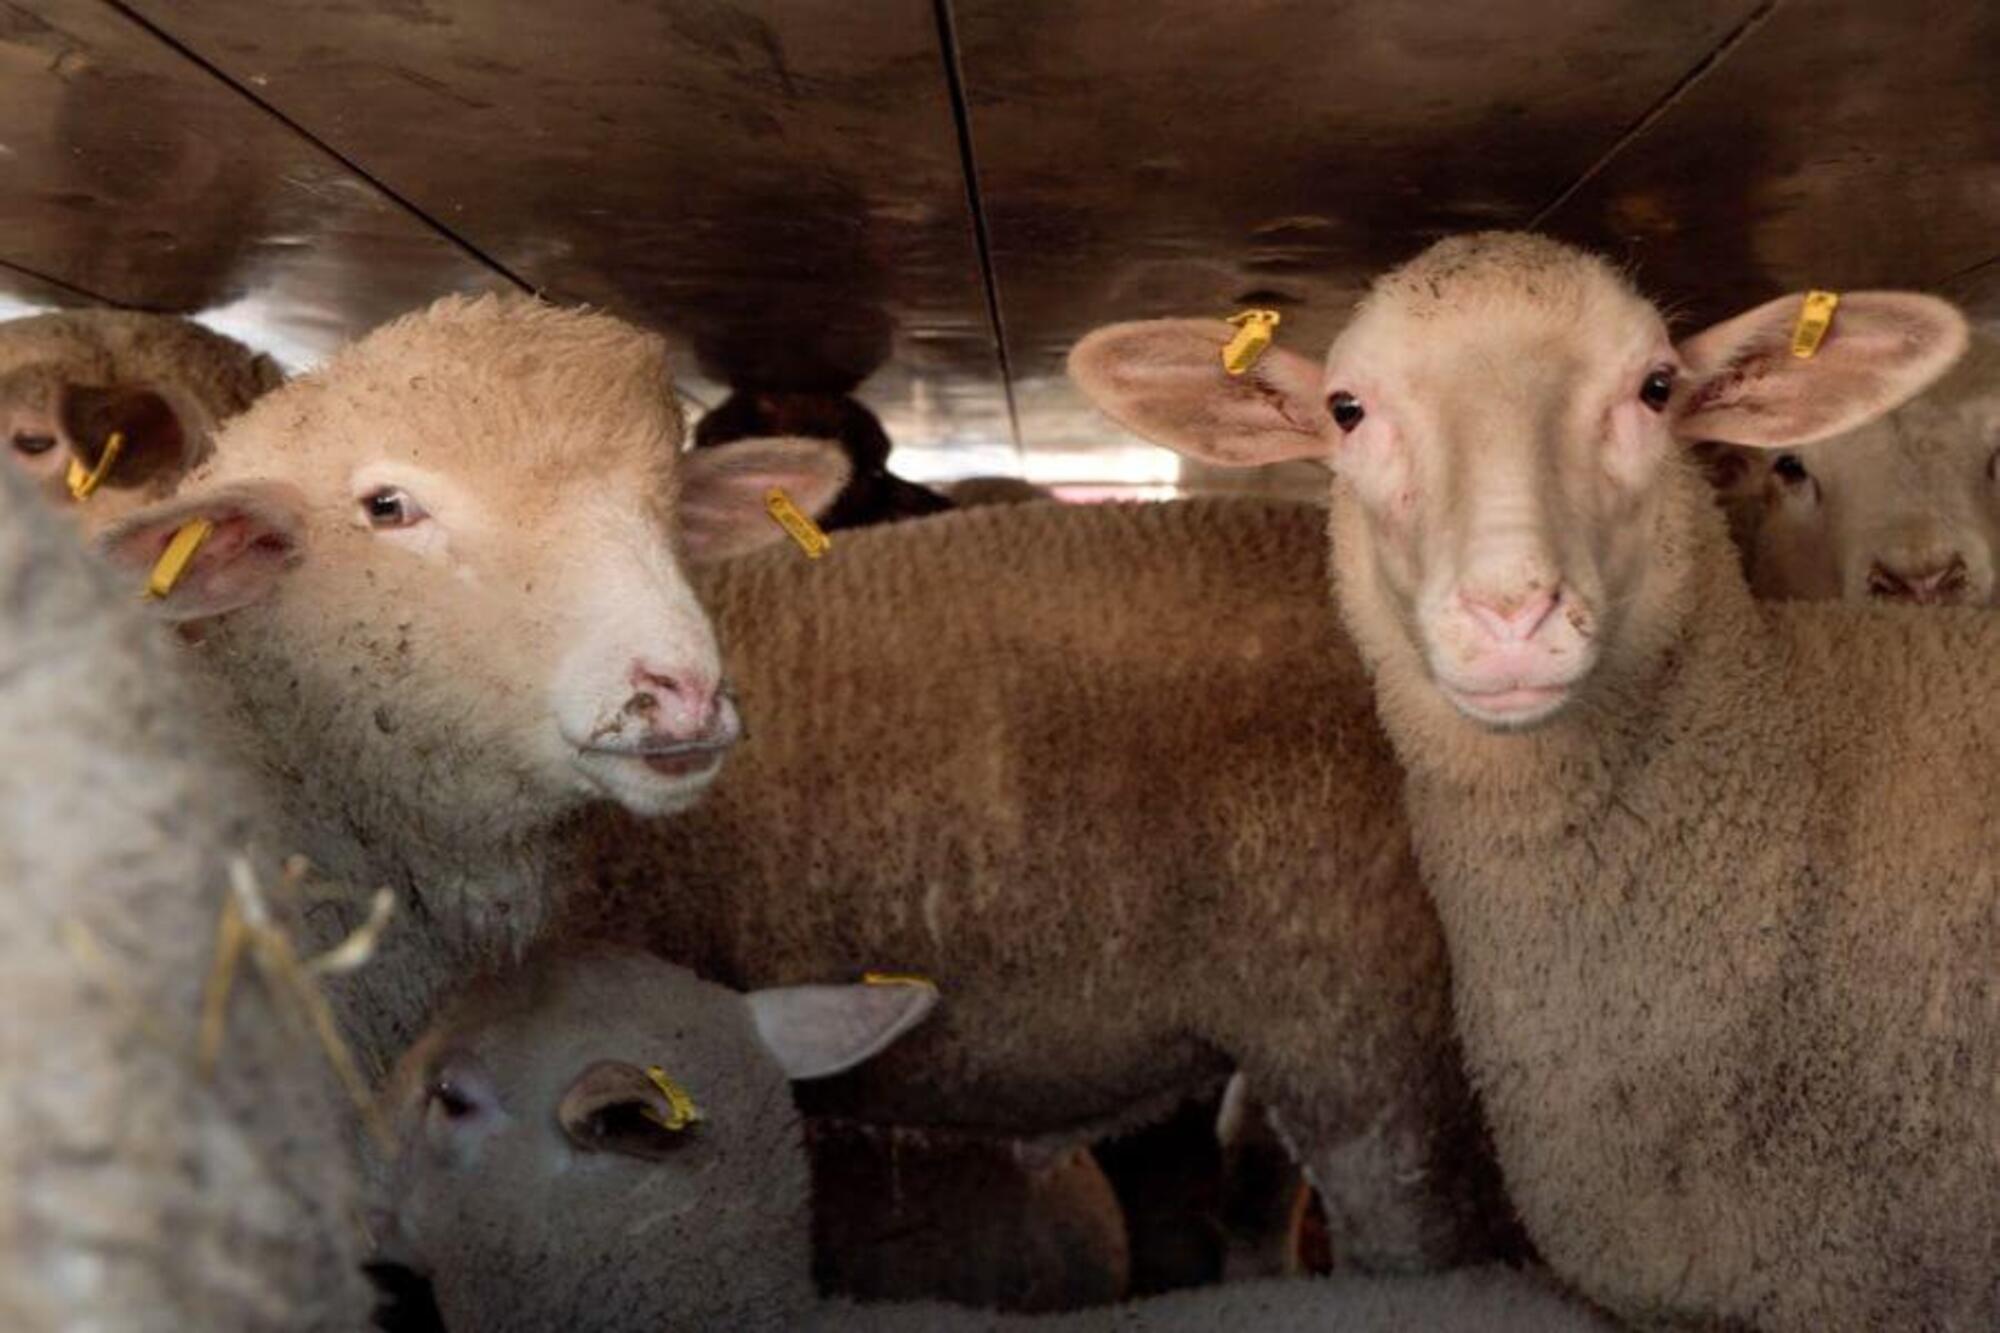 Le condizioni in cui molti animali degli allevamenti intesivi, fra cui proprio gli agnelli, vengono stipati